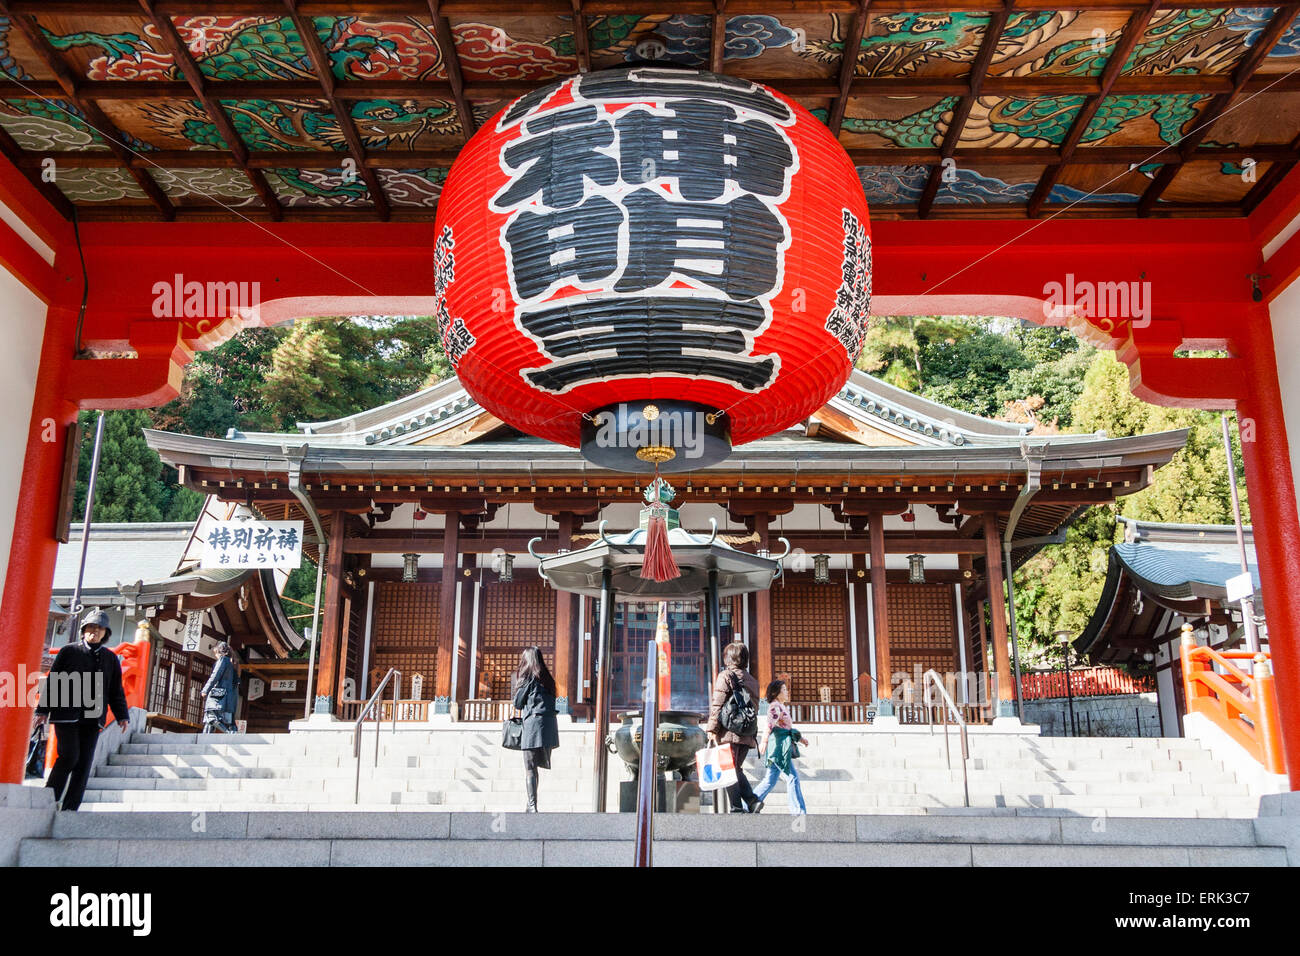 Il Tempio di mondo Yakujin in Giappone. Un grande chochin, lanterna di carta appesa sull'ingresso e soffitto ornato, con il salone principale sullo sfondo Foto Stock